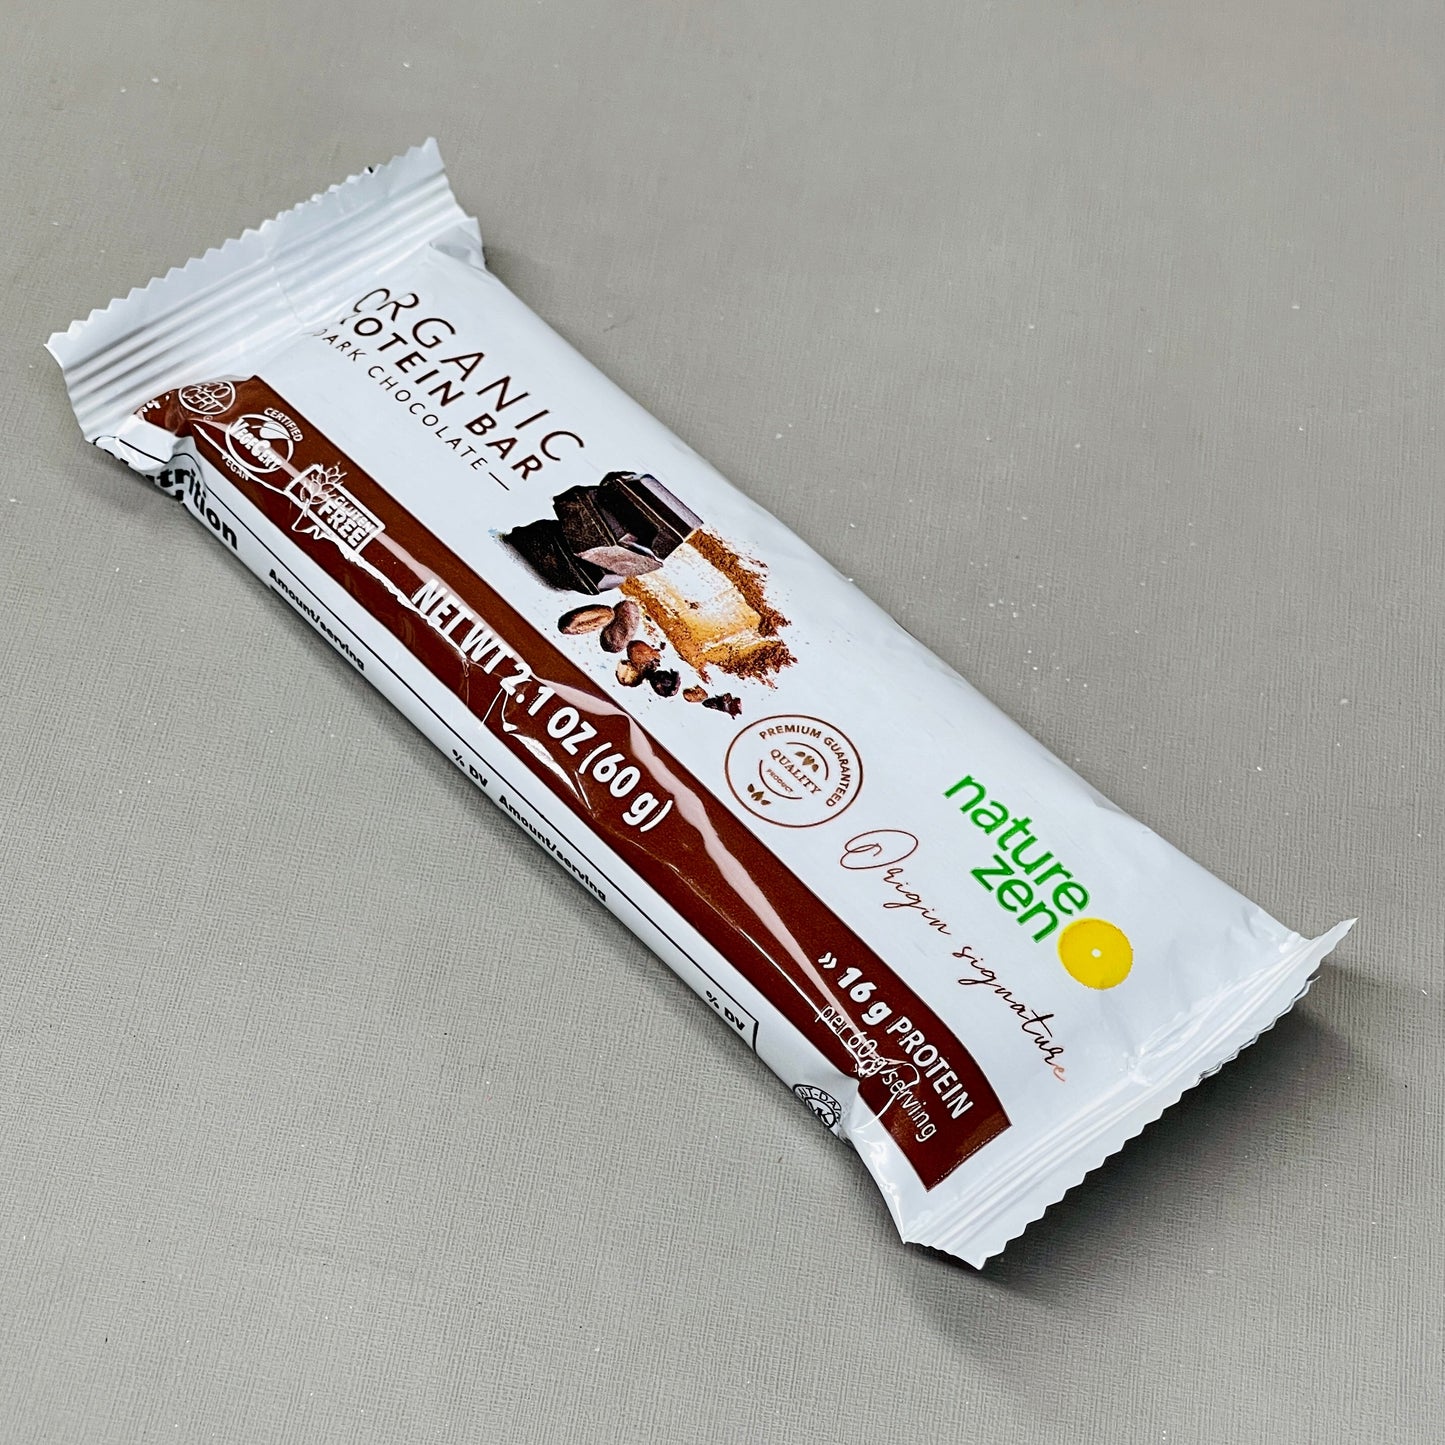 ZA@ NATURE ZEN Organic Protein Bar Dark Chocolate BB 02/23 (AS-IS)